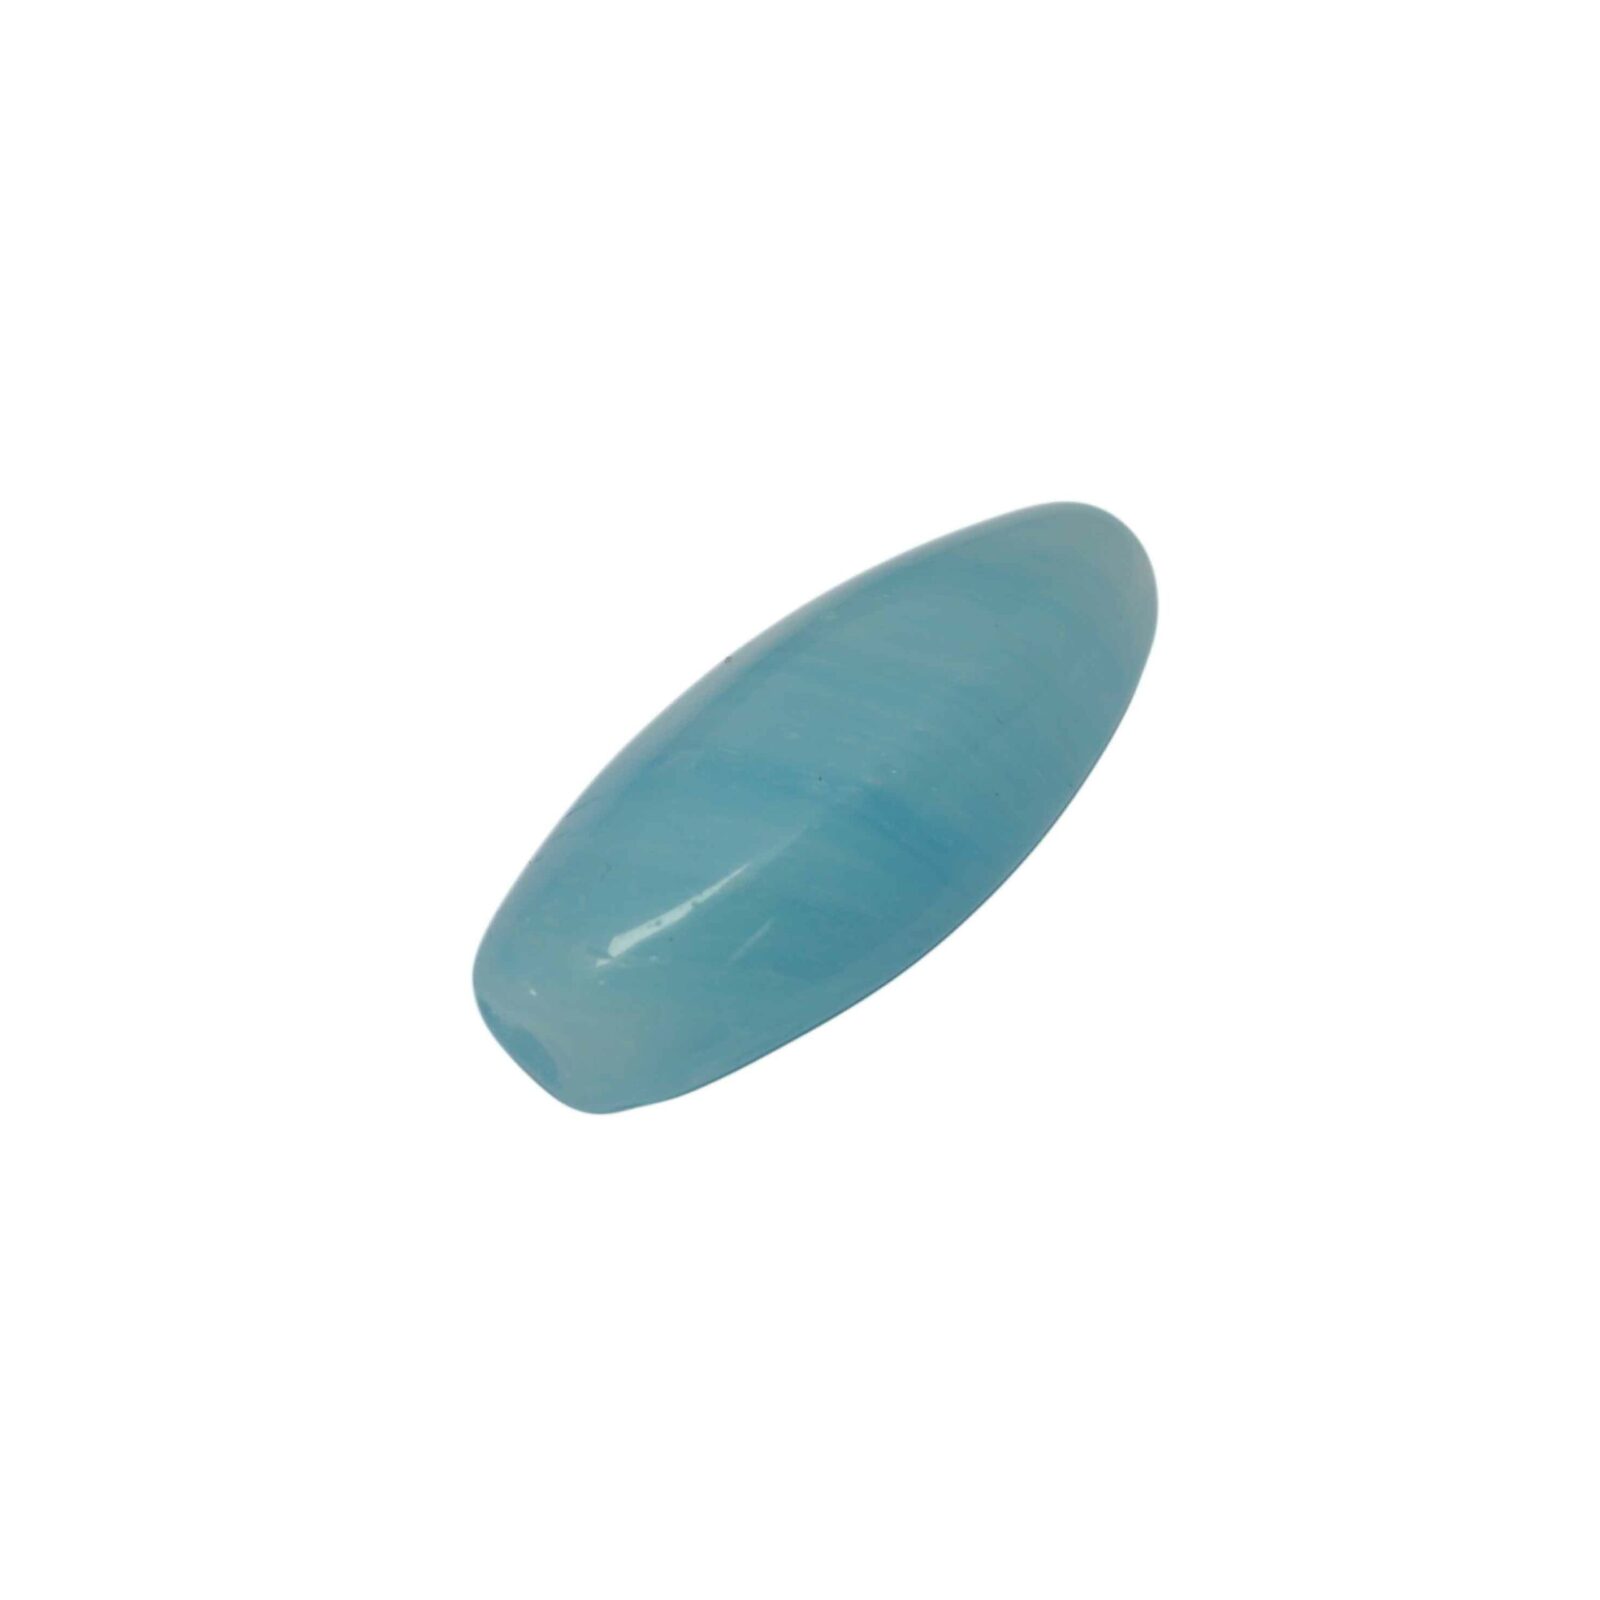 Blauwe ovale glaskraal met witte/blauwe strepen